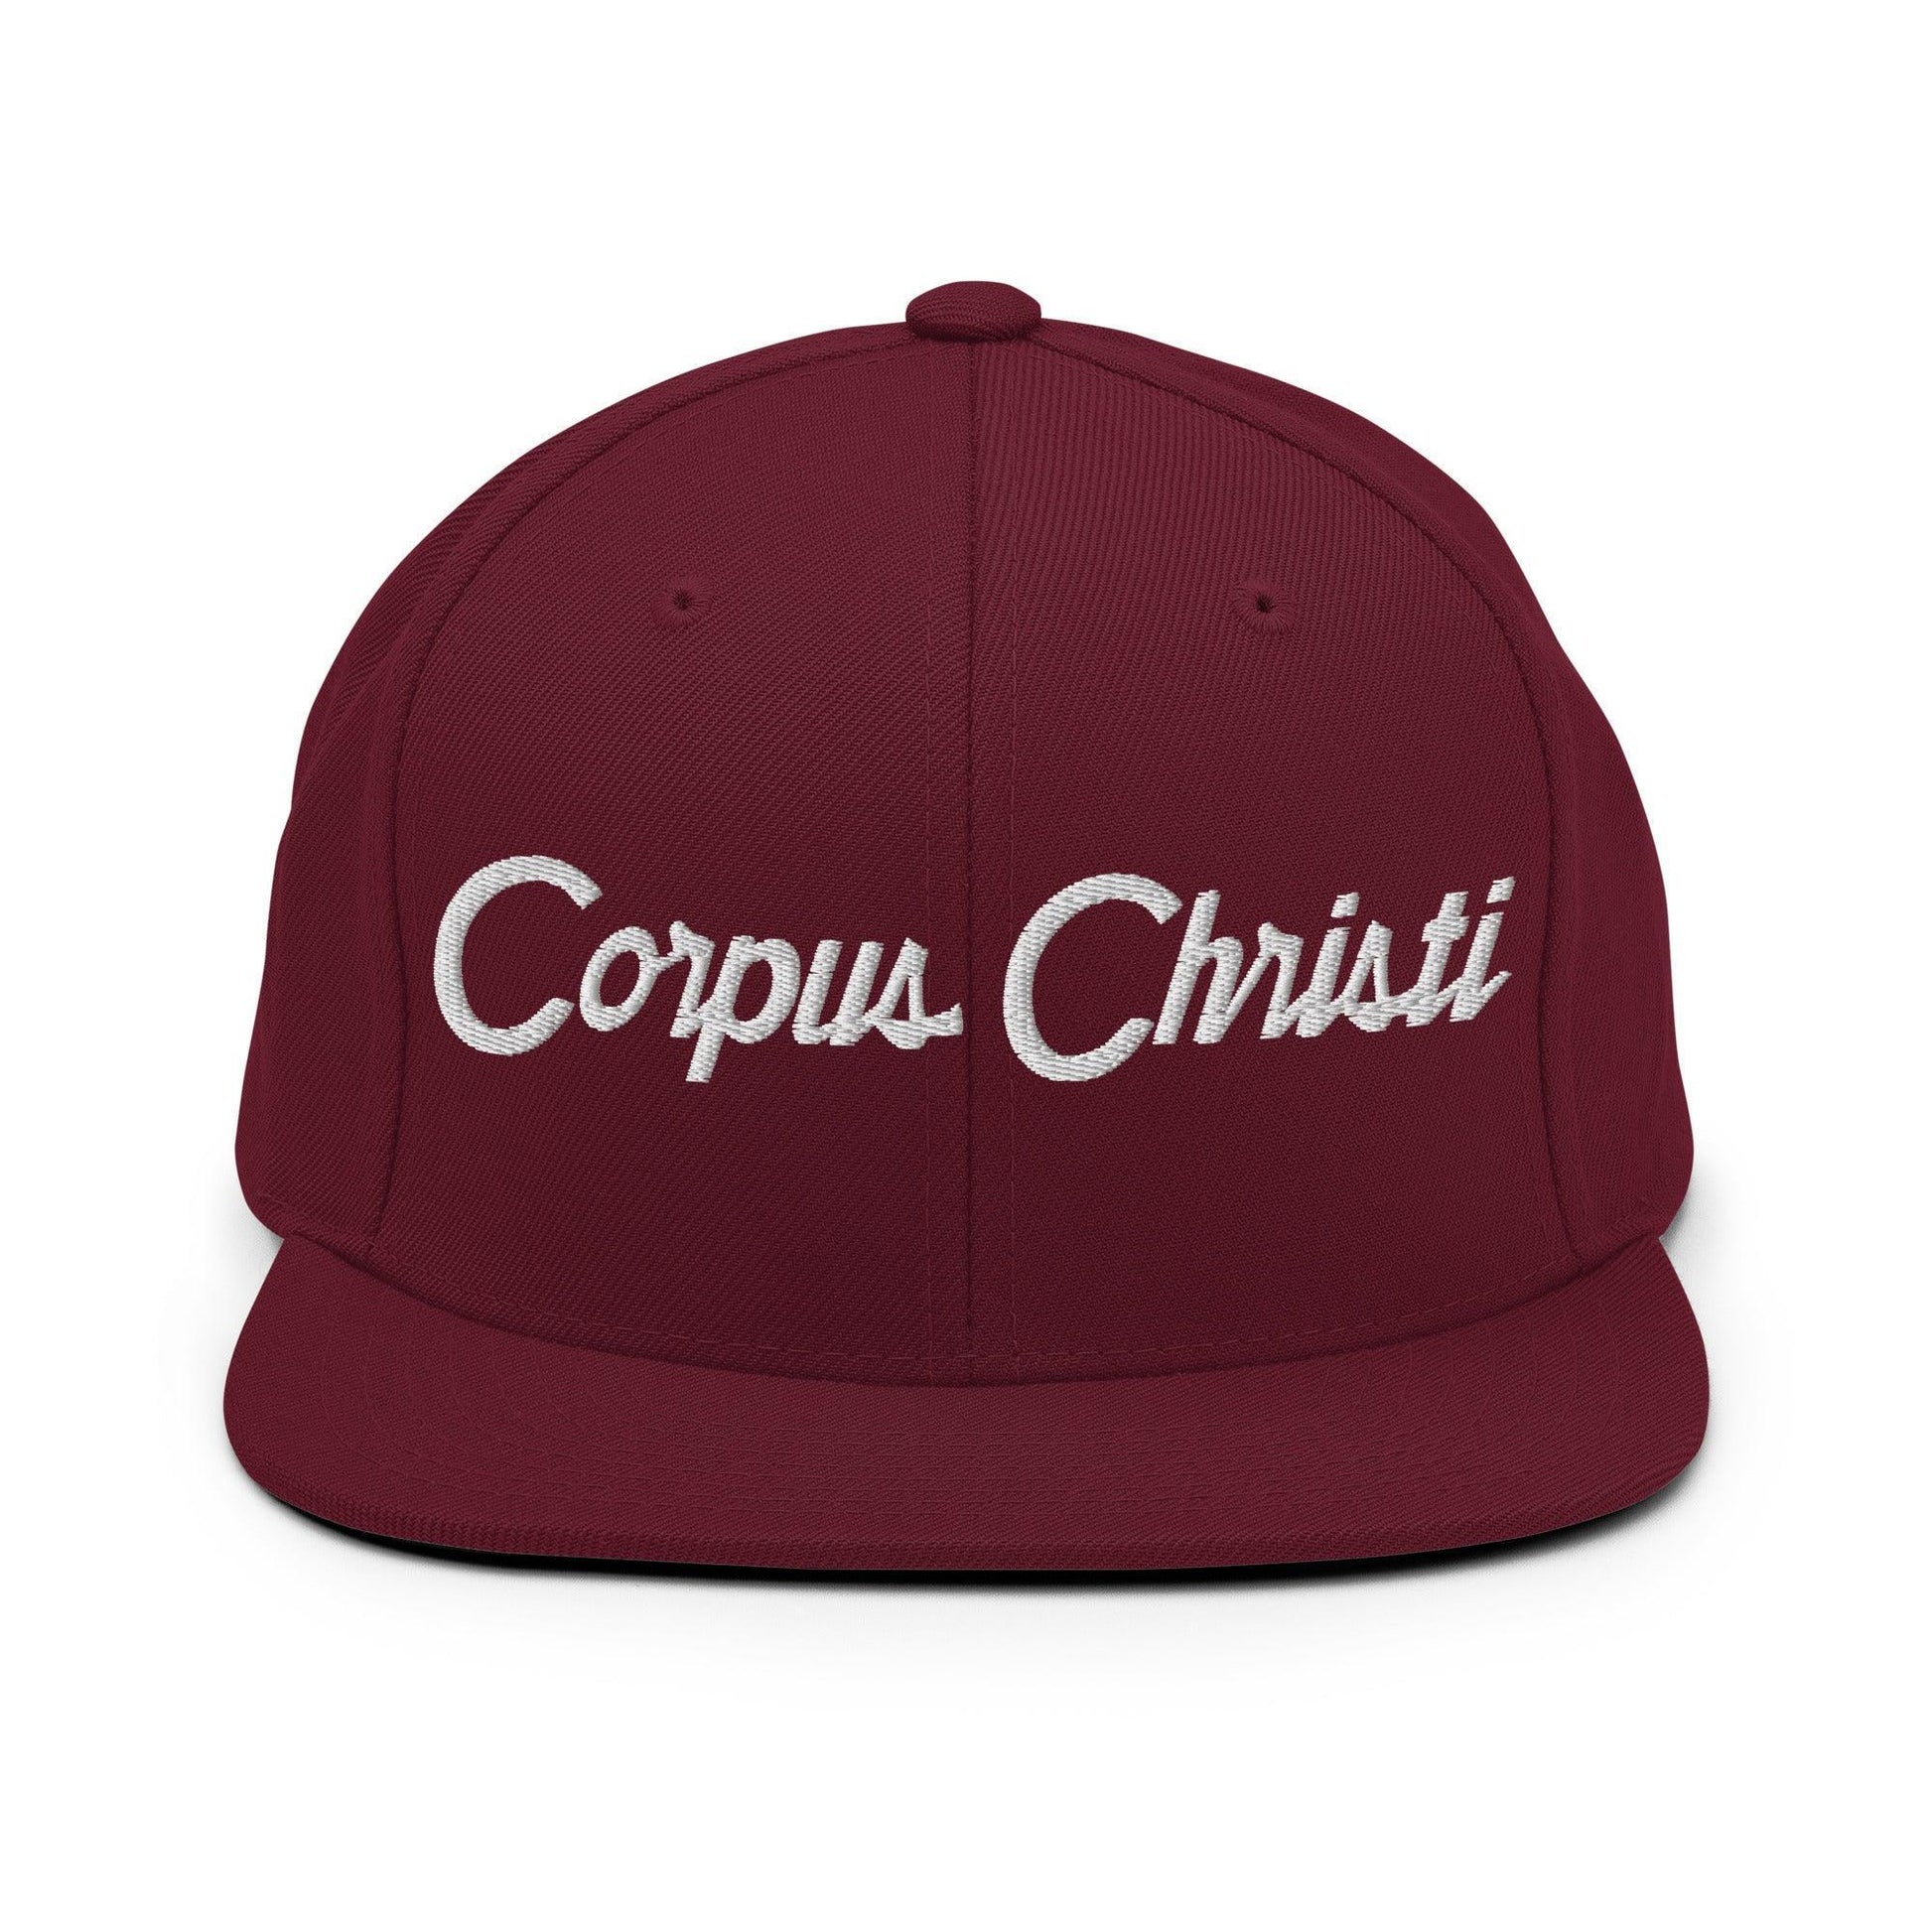 Corpus Christi Script Snapback Hat Maroon